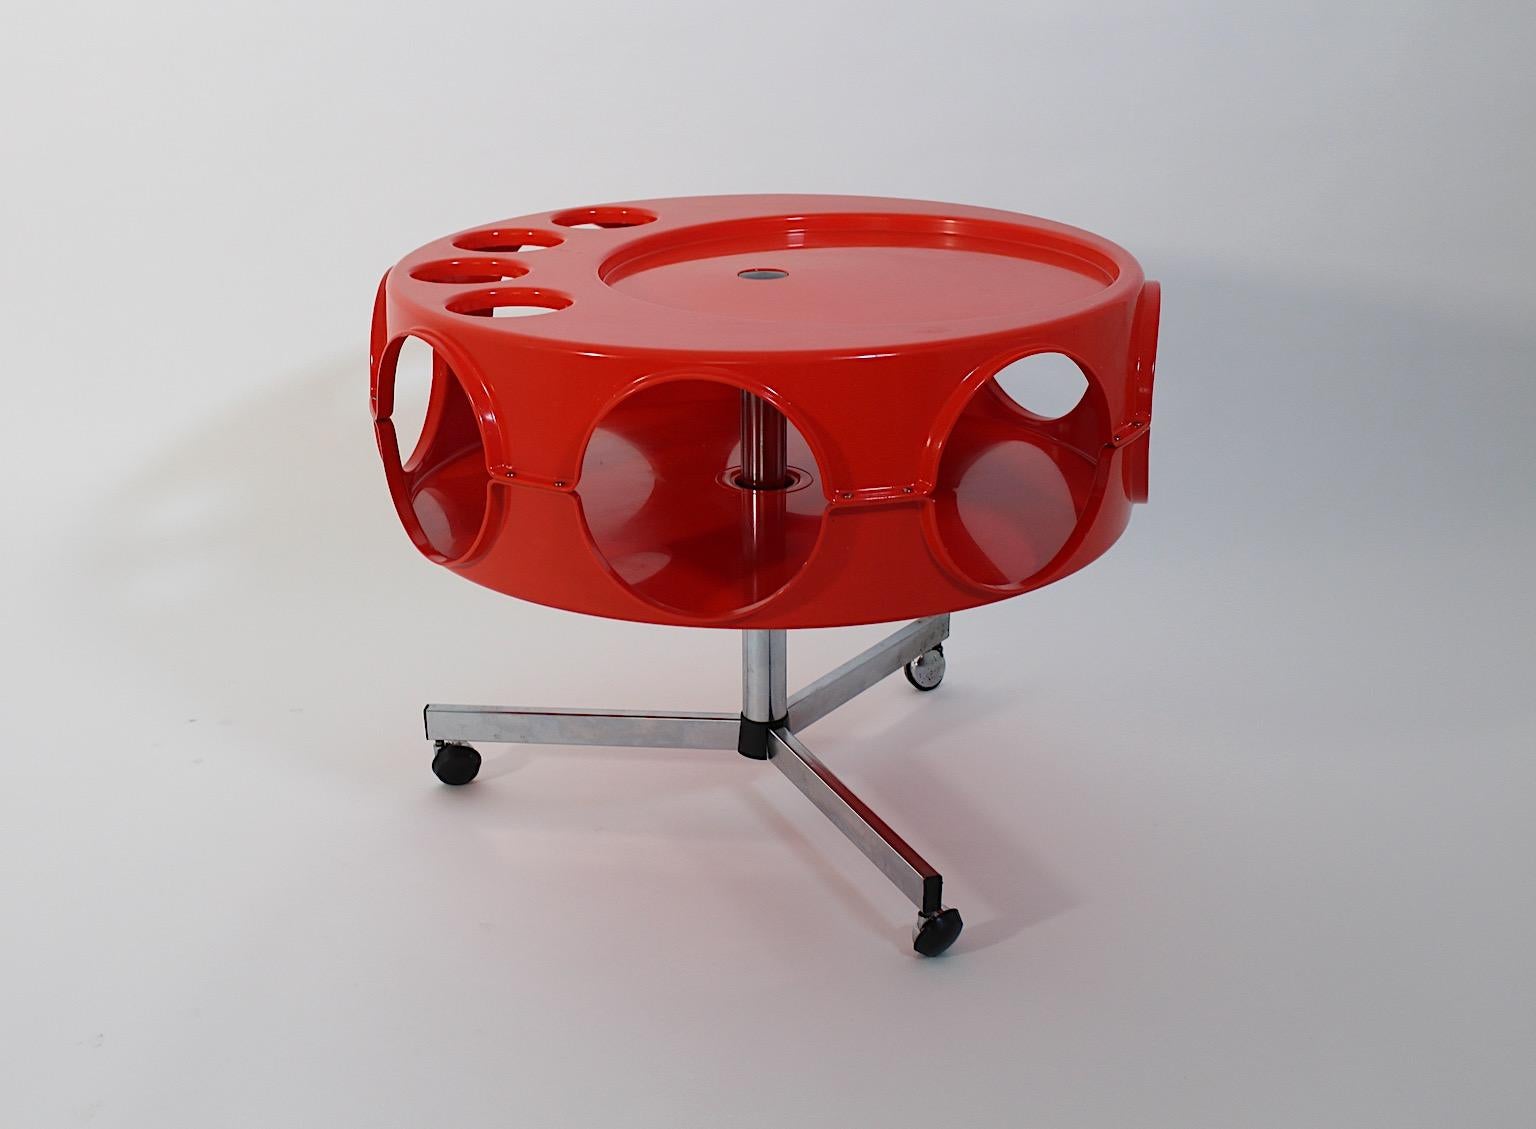 Chariot de bar ou table de canapé vintage de l'ère spatiale Rotobar par Curver en plastique de couleur orange circa 1971, Pays-Bas.
Un nouveau venu audacieux et joyeux, le chariot de bar à roulettes avec 4 ( quatre ) incrustations pour récipients ou